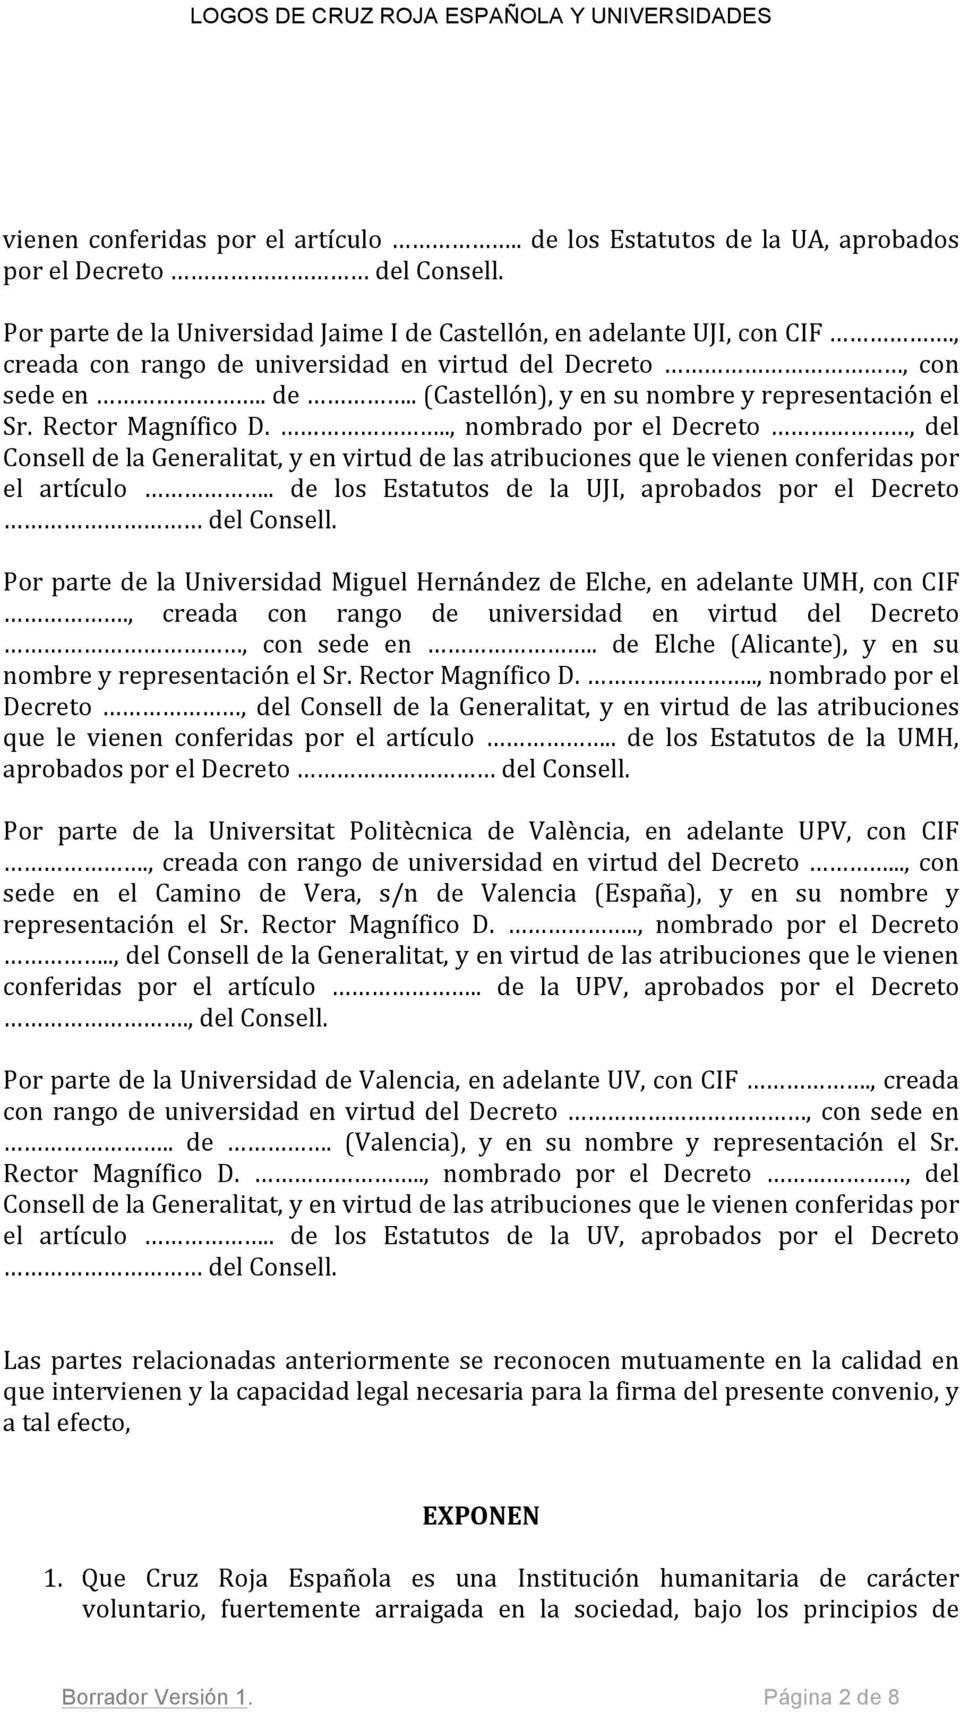 .., nombrado por el Decreto, del Consell de la Generalitat, y en virtud de las atribuciones que le vienen conferidas por el artículo.. de los Estatutos de la UJI, aprobados por el Decreto del Consell.